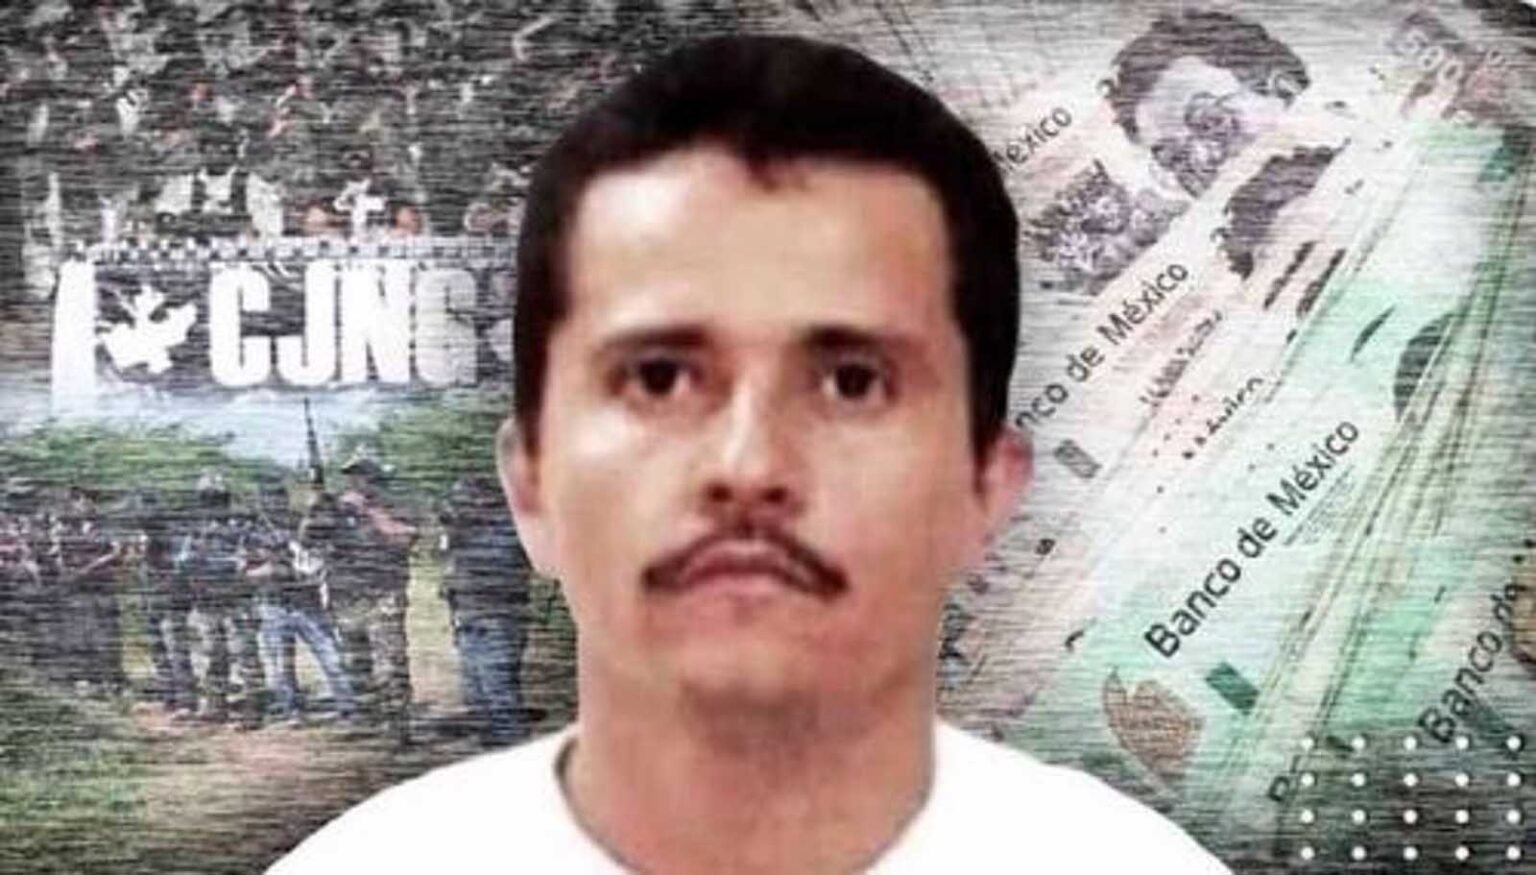 ¿El Chapo Guzmán fue superado? Entérate cómo fue que El Mencho se convirtió en el capo más poderoso de México.